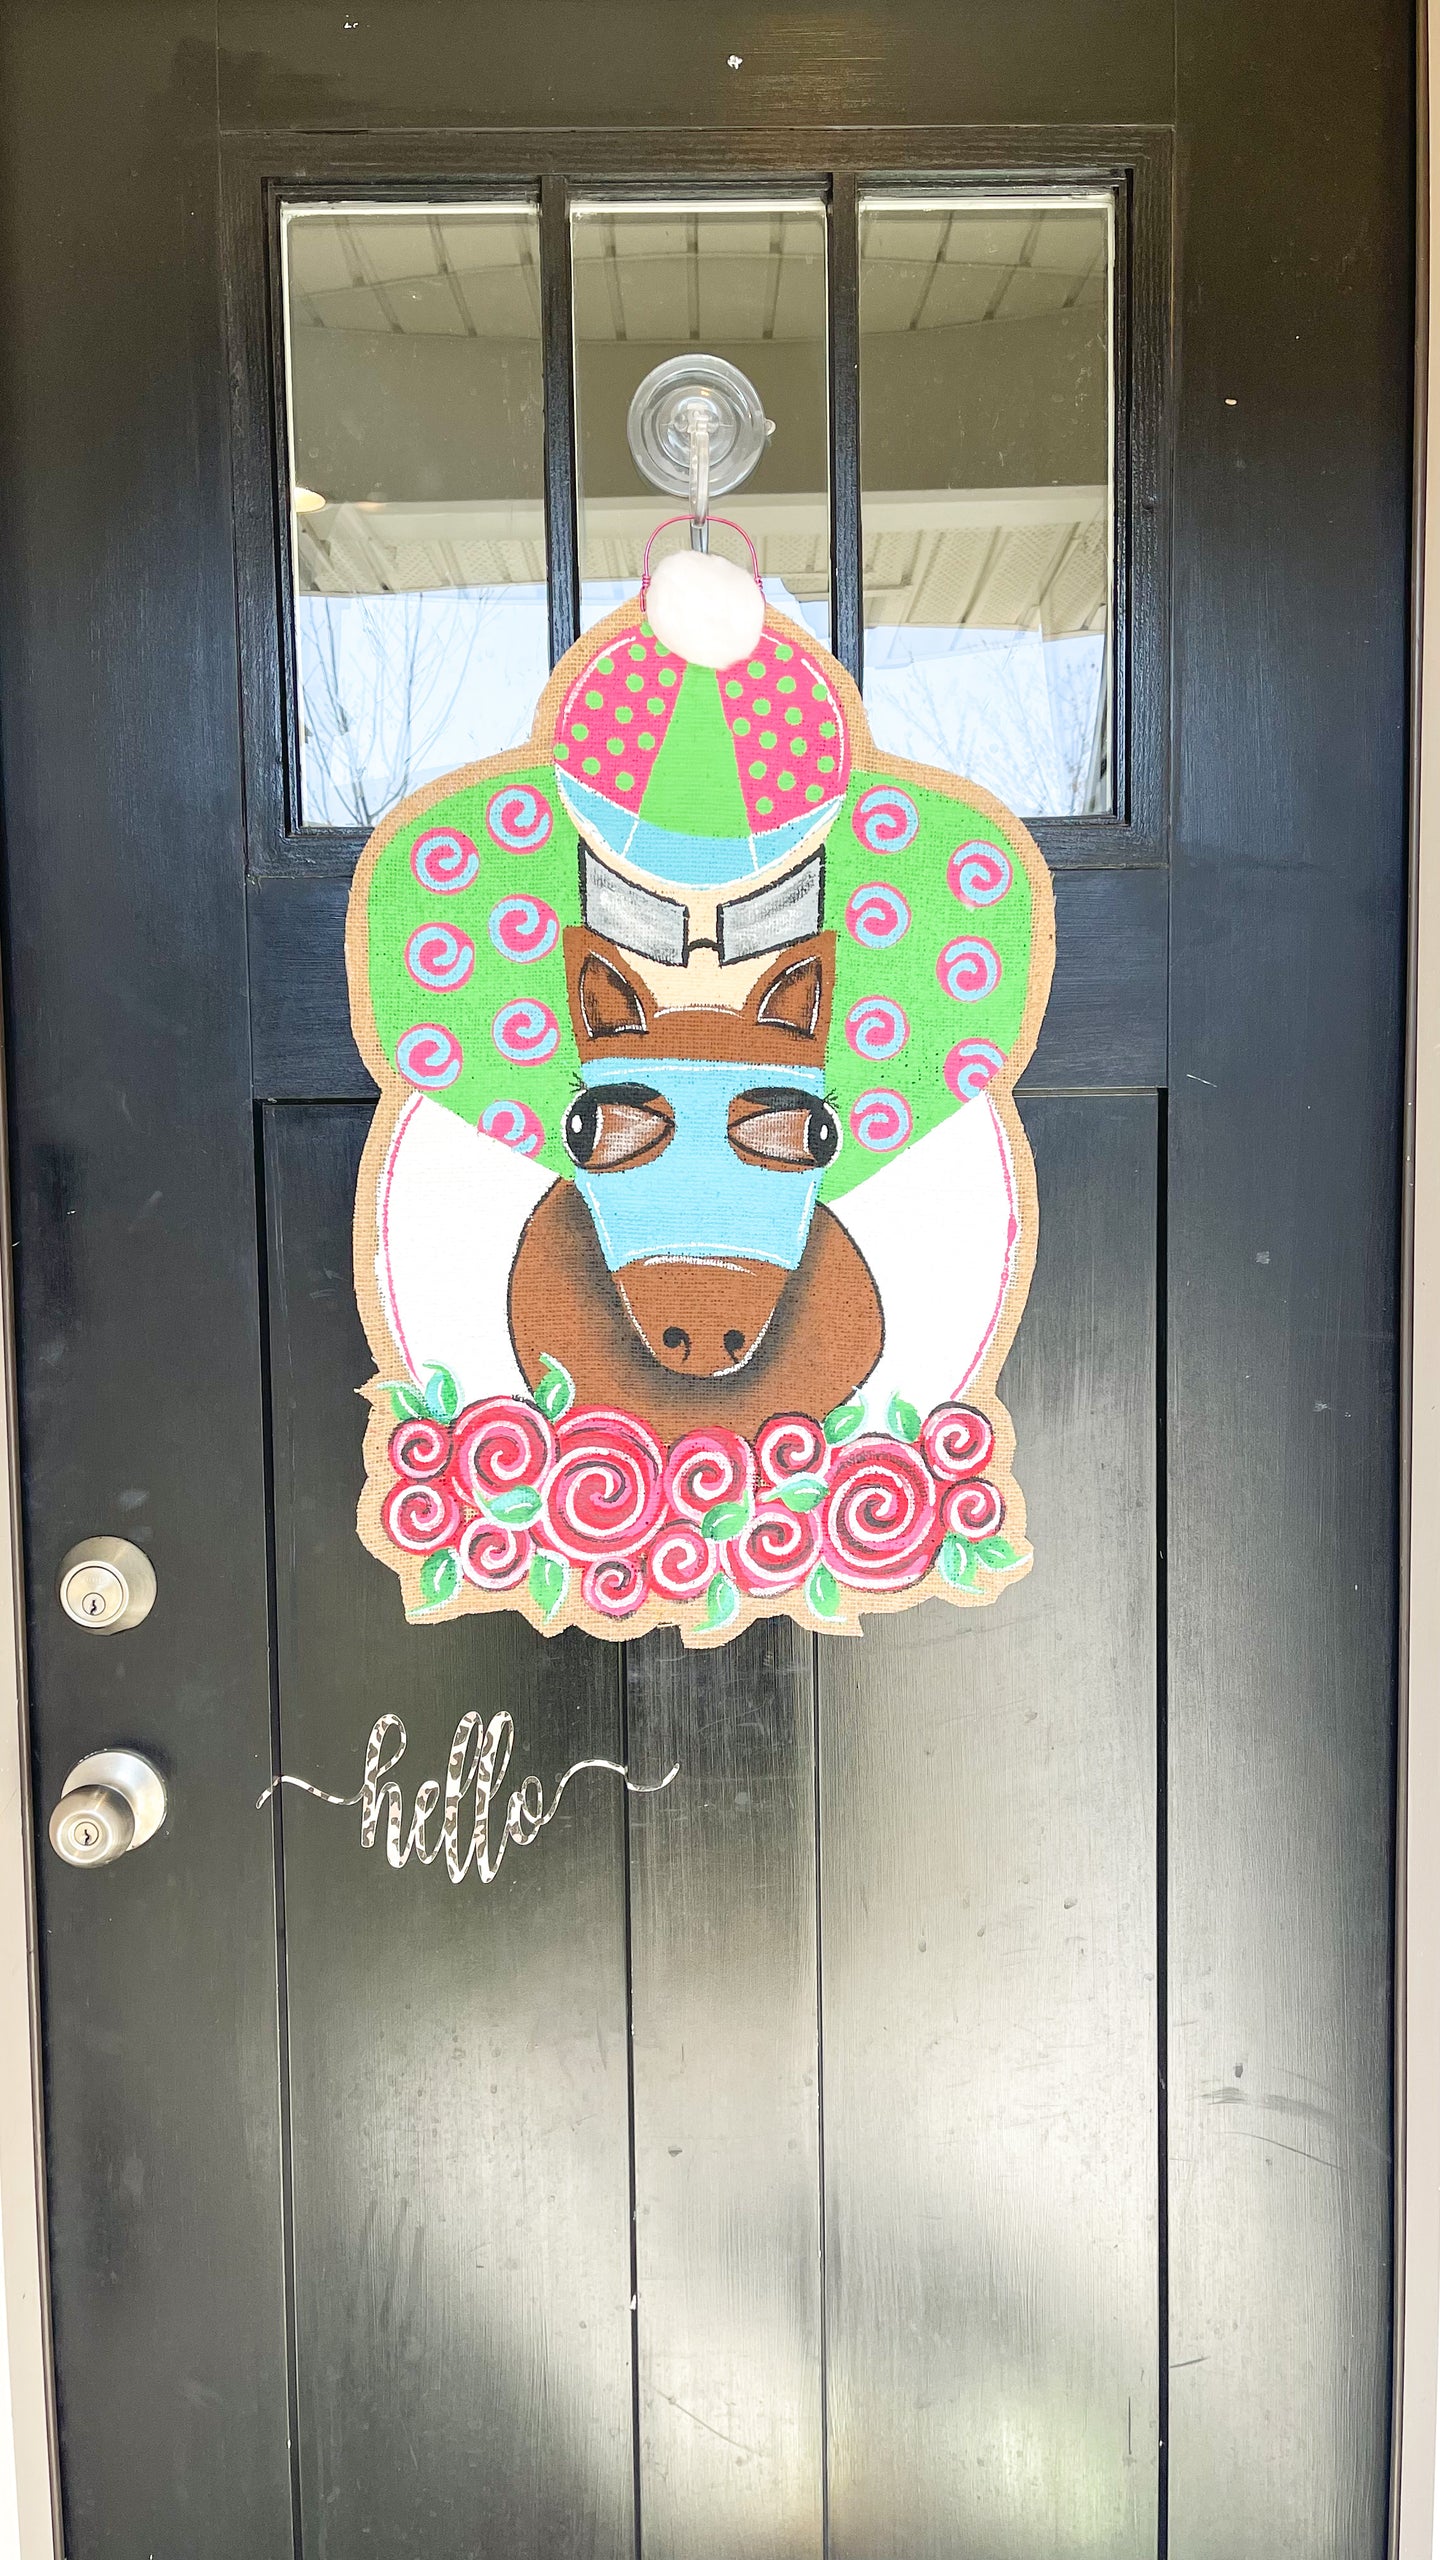 Derby Horse and Jockey Door Hanger in Turquoise